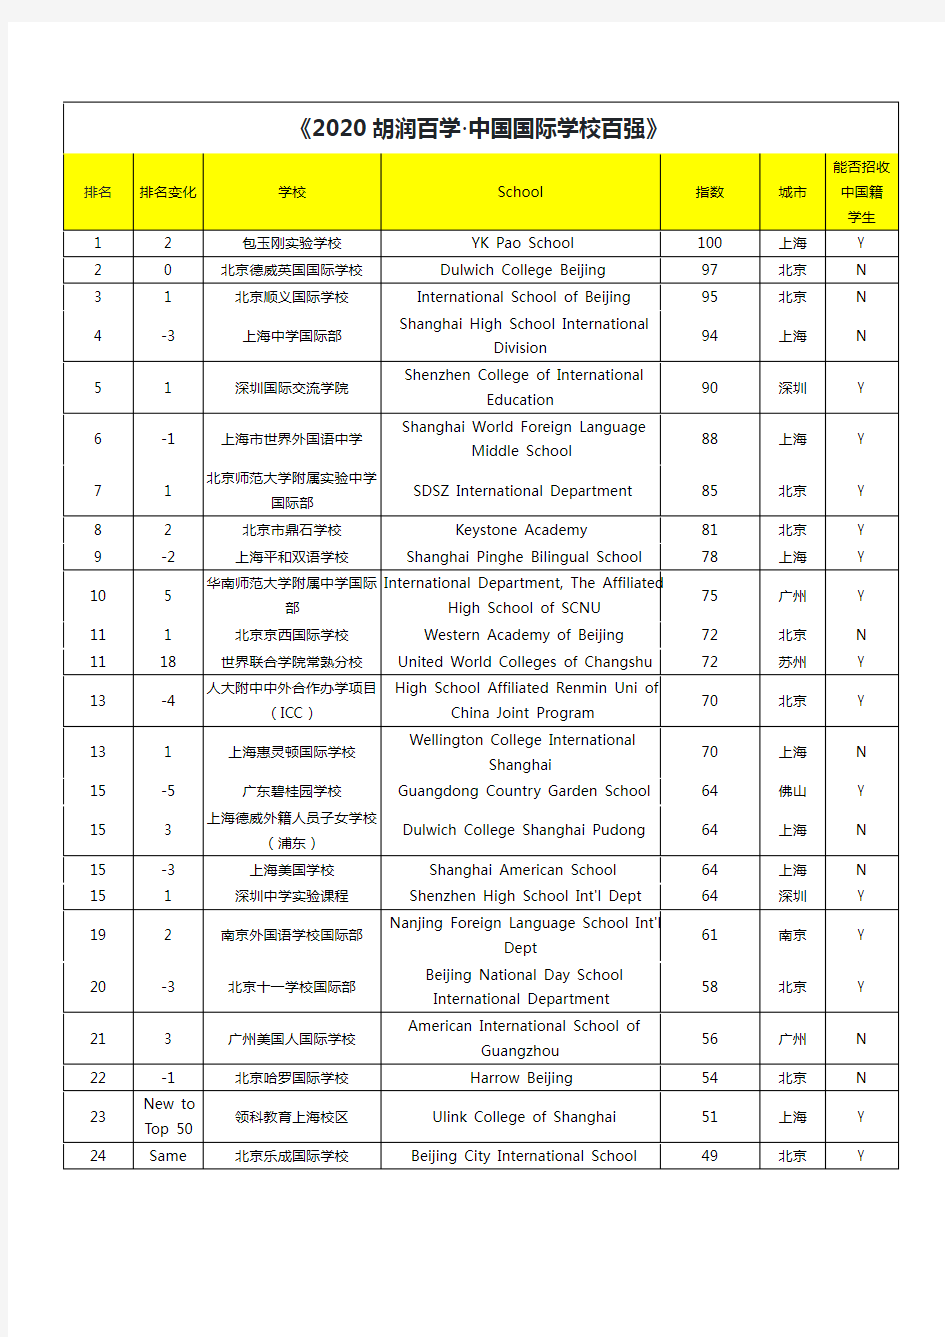 《2020胡润百学·中国国际学校百强》完整榜单